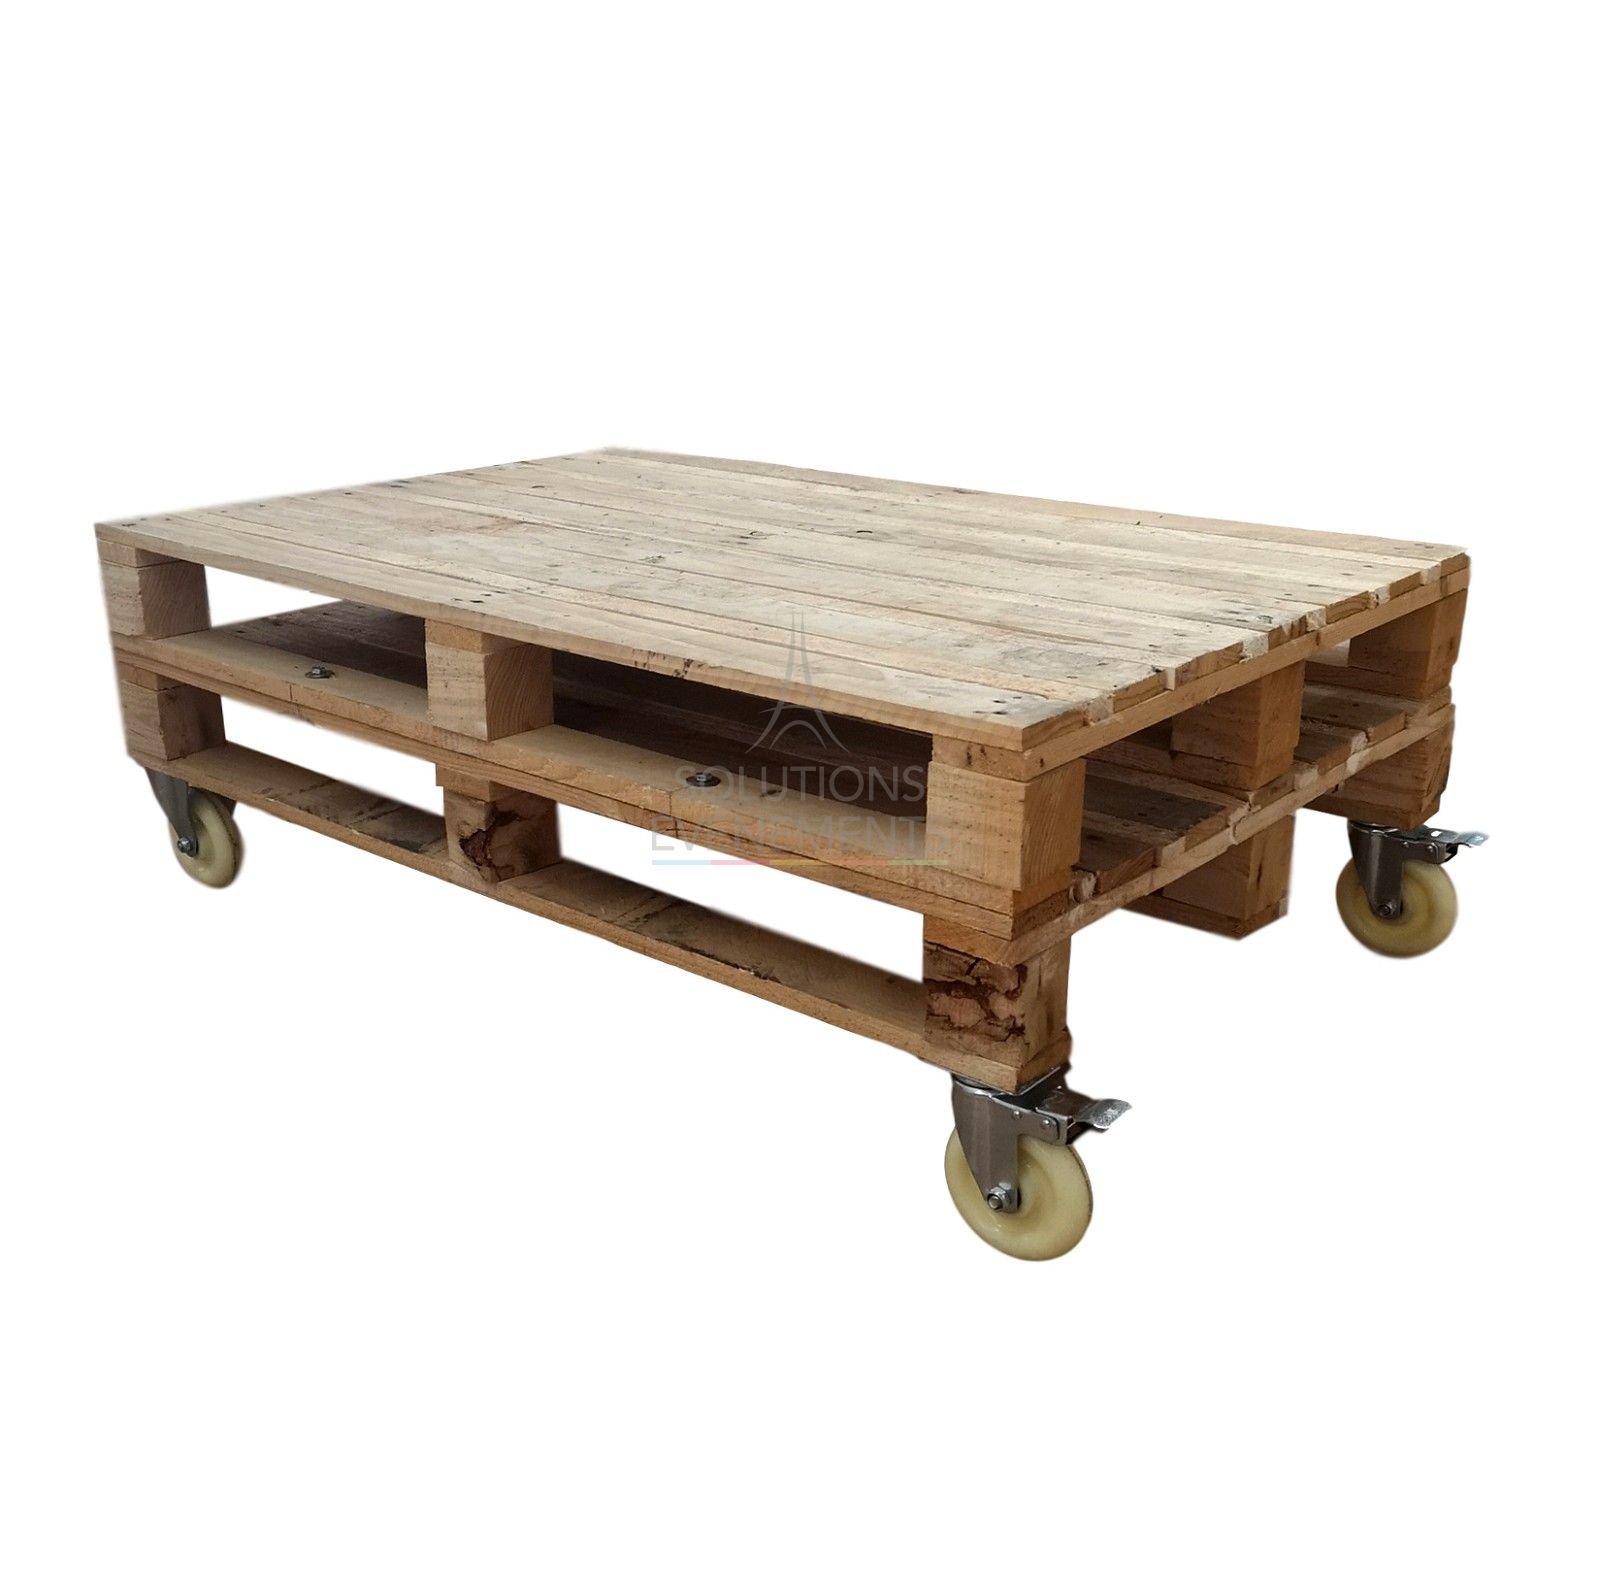 Industrial pallet coffee table rental